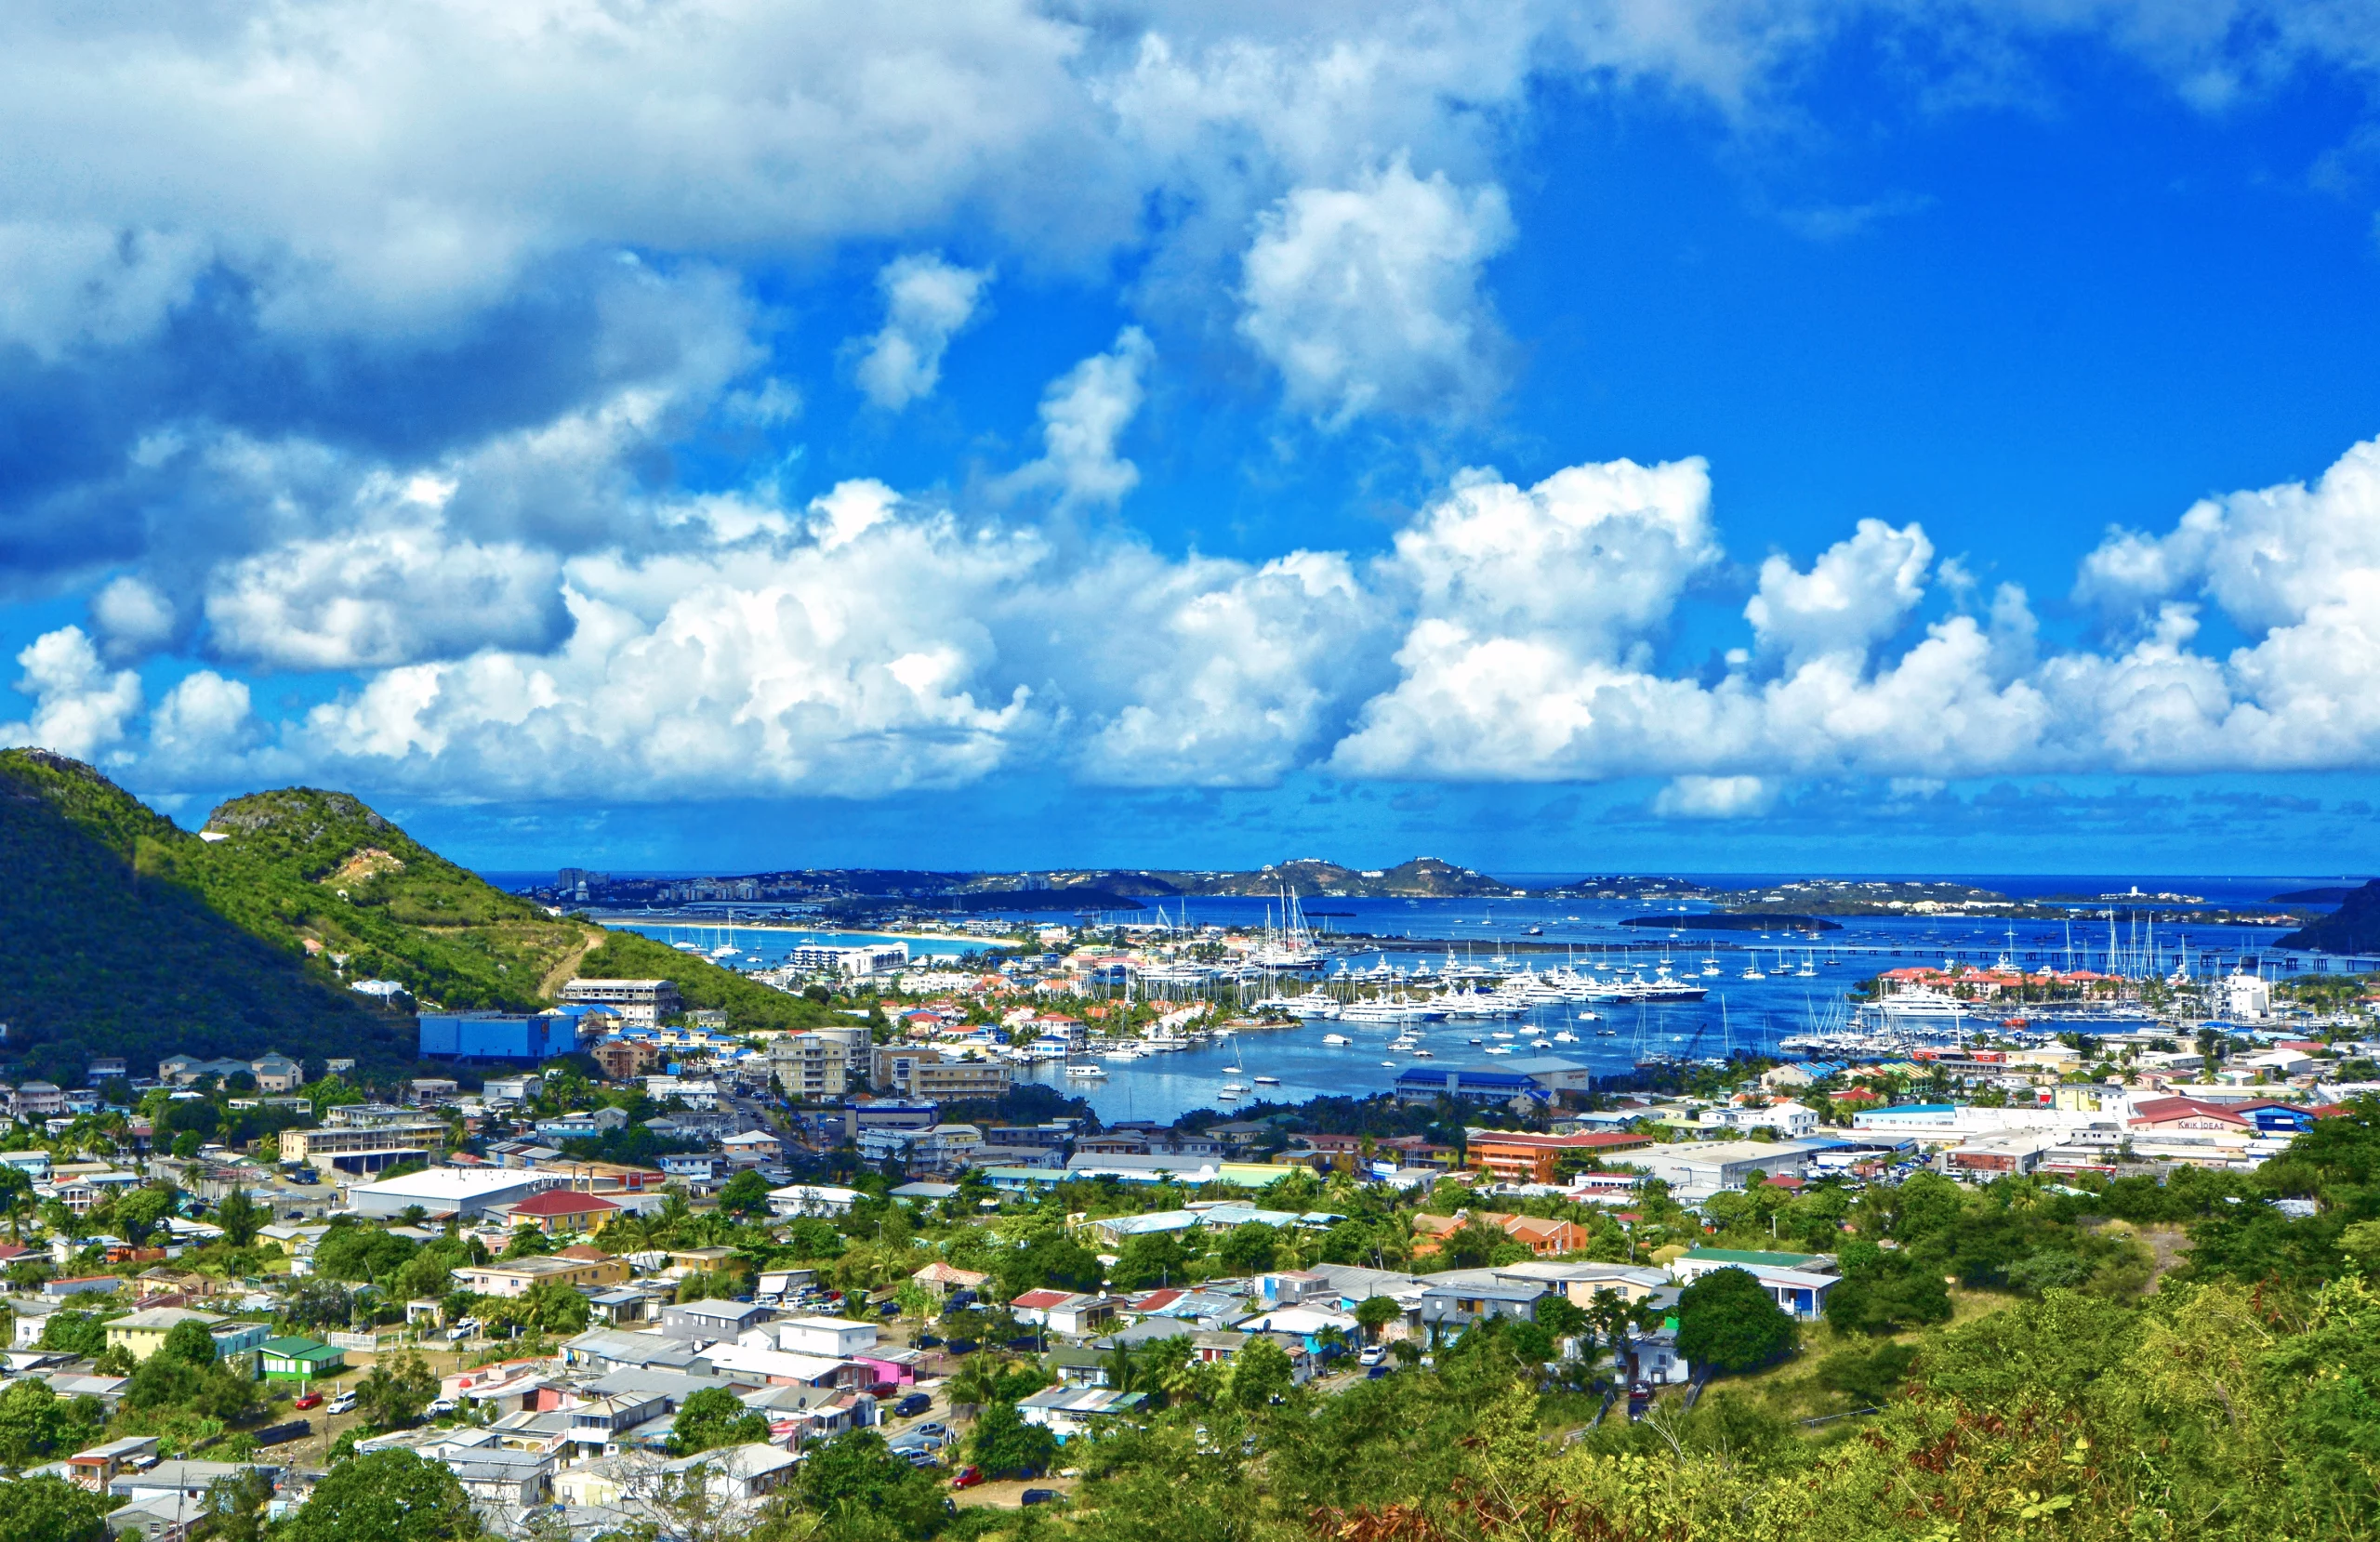 Saint Martin, Port Marigot, Sint Maarten, Island of Saint Martin/Sint Maarten